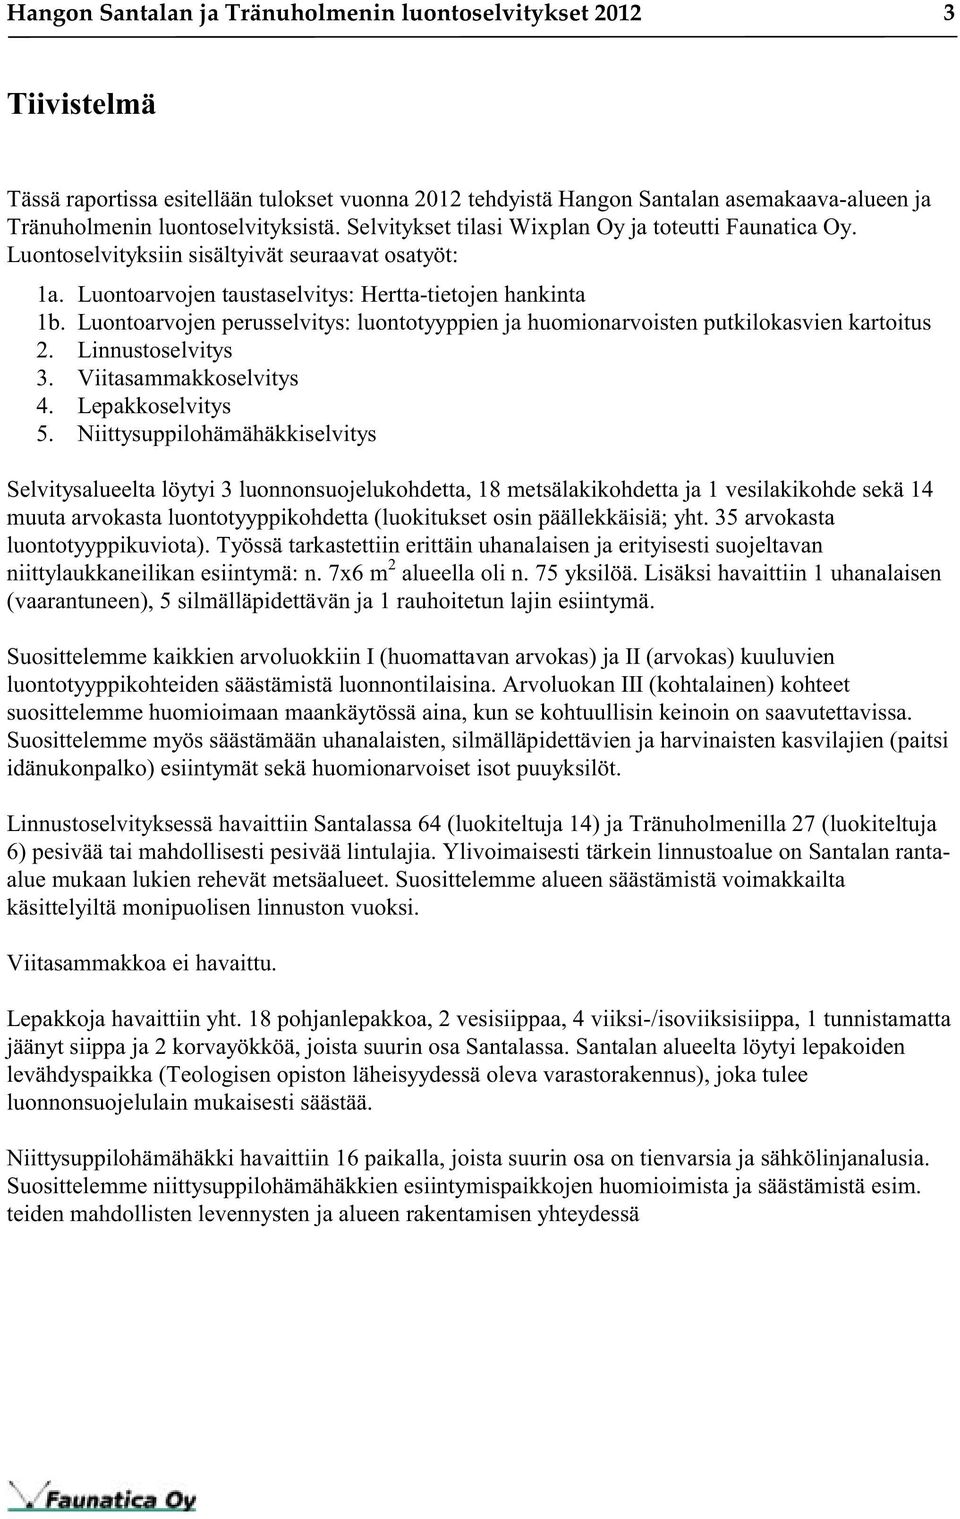 Luontoarvojen perusselvitys: luontotyyppien ja huomionarvoisten putkilokasvien kartoitus 2. Linnustoselvitys 3. Viitasammakkoselvitys 4. Lepakkoselvitys 5.